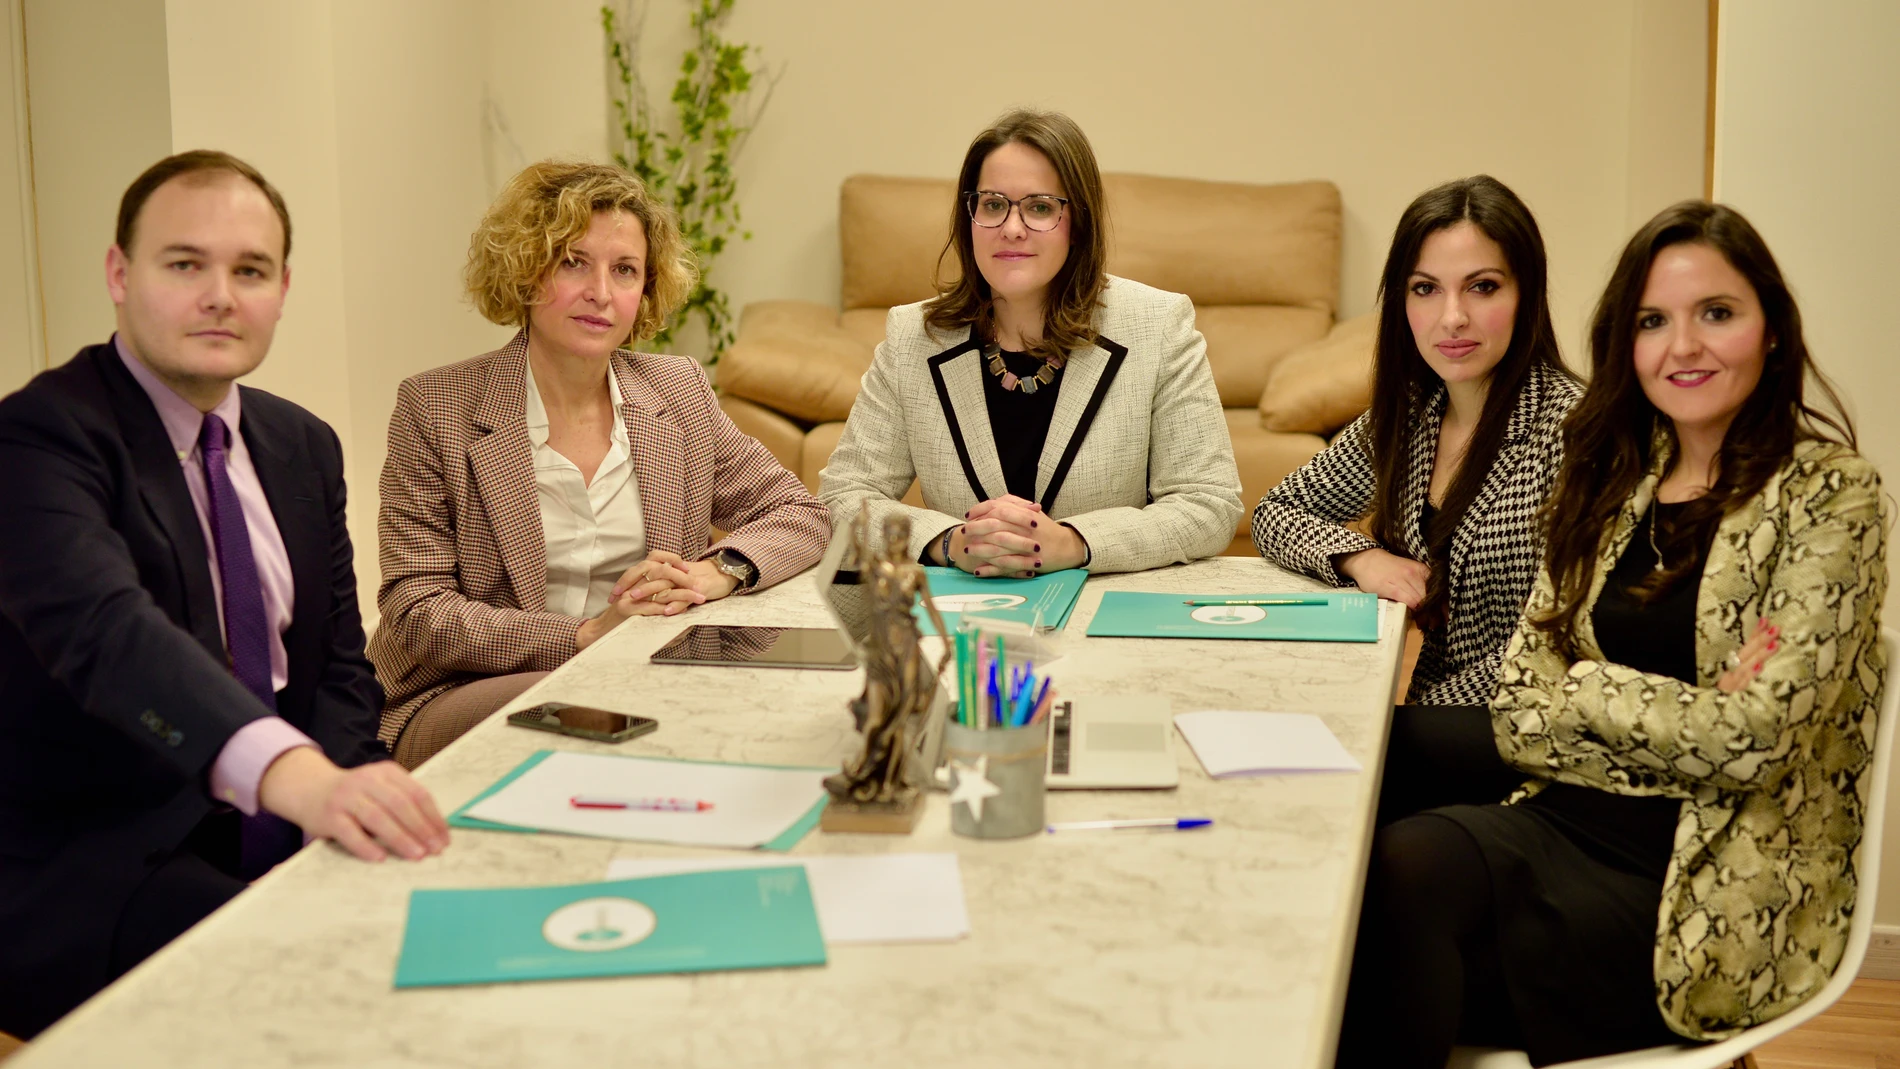 Abogamur, despacho de abogados en Murcia, especializado en derecho de familia